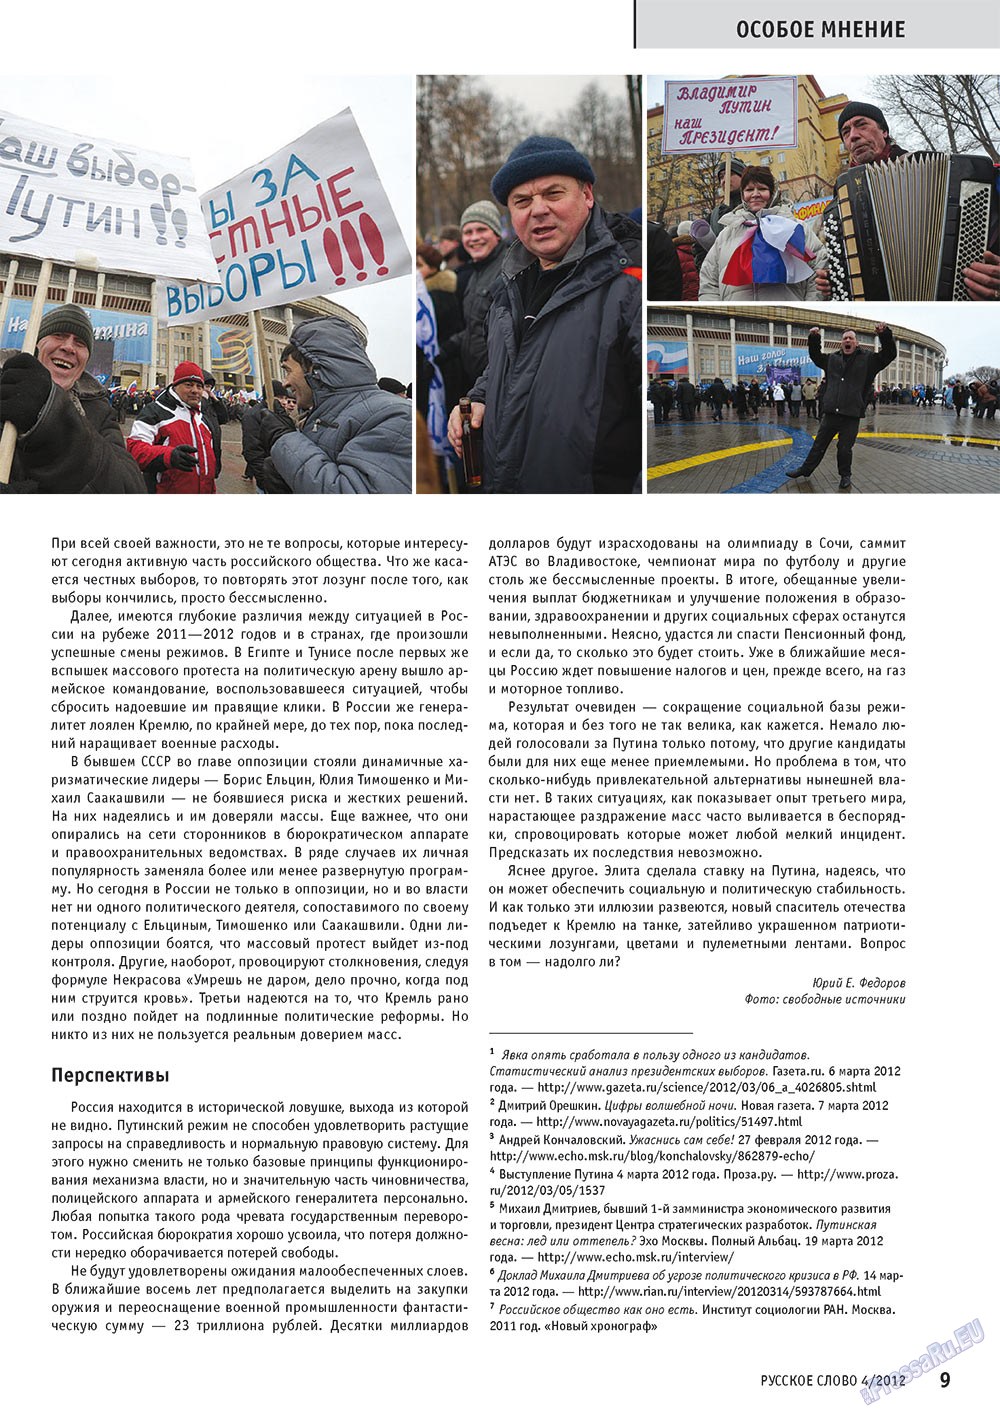 Русское слово, журнал. 2012 №4 стр.9